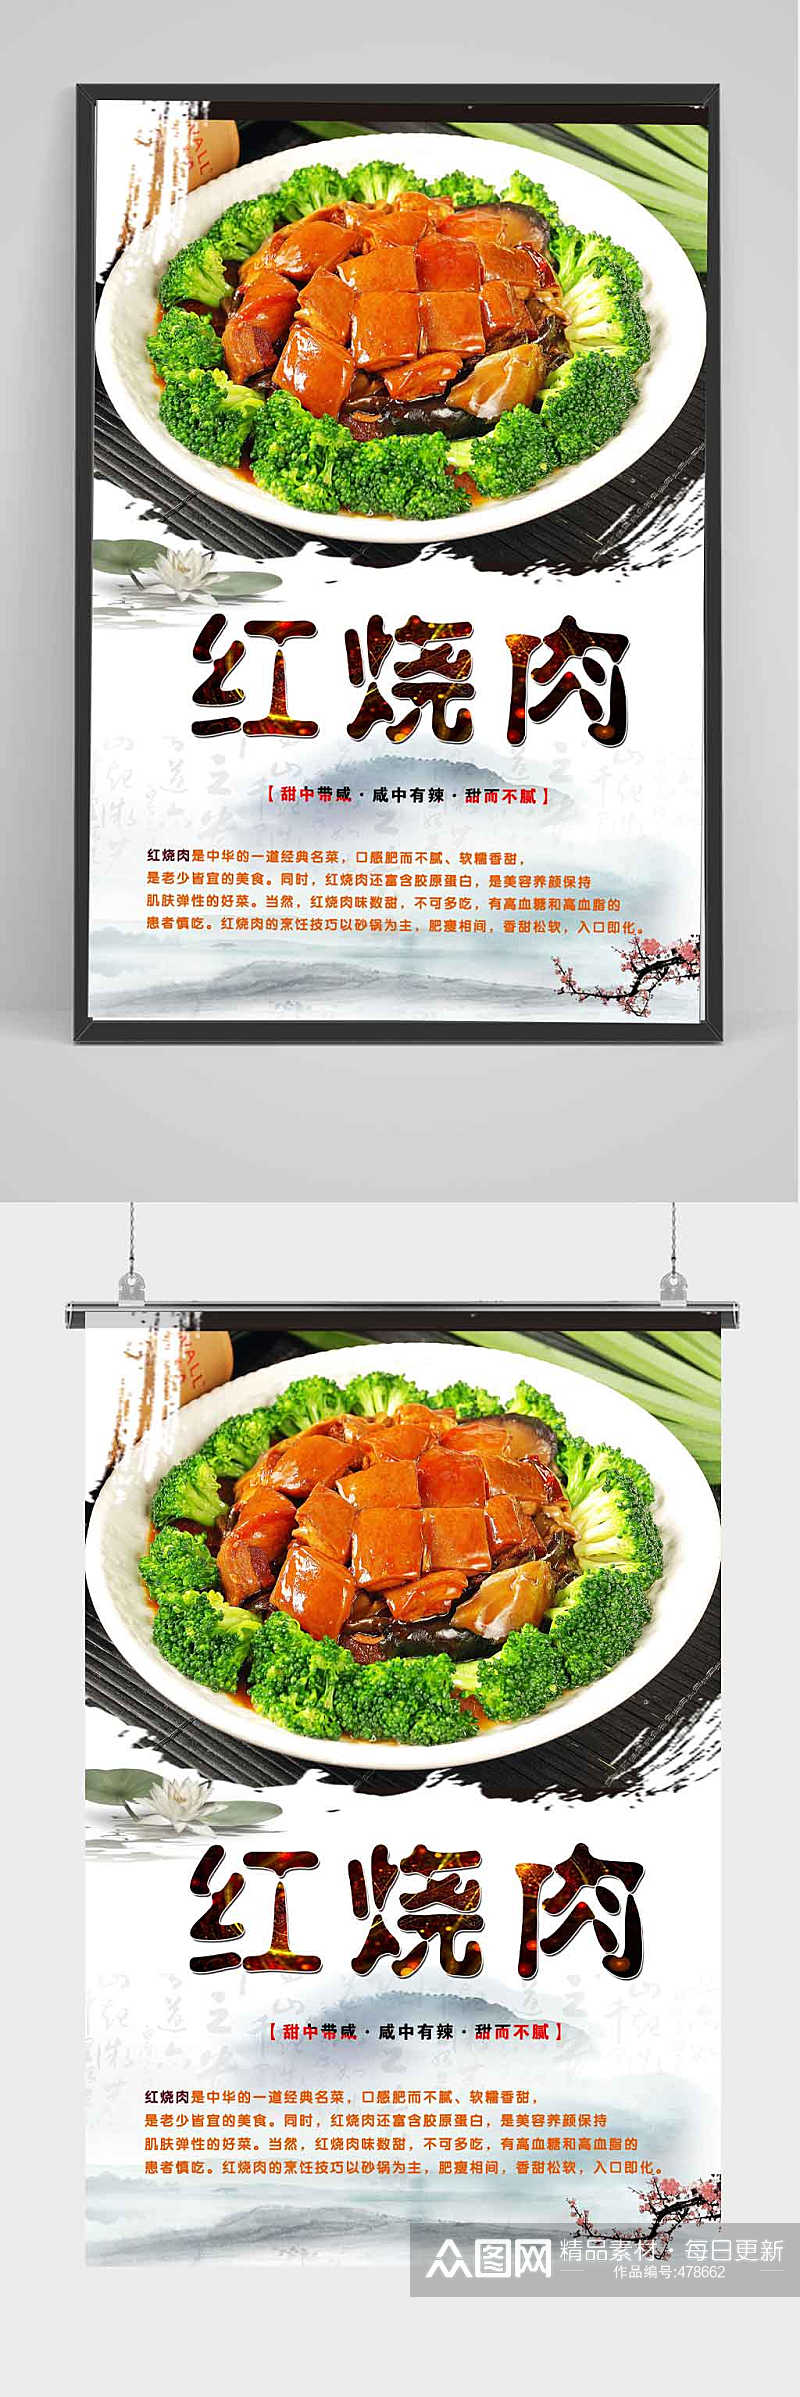 中国风红烧肉海报设计素材